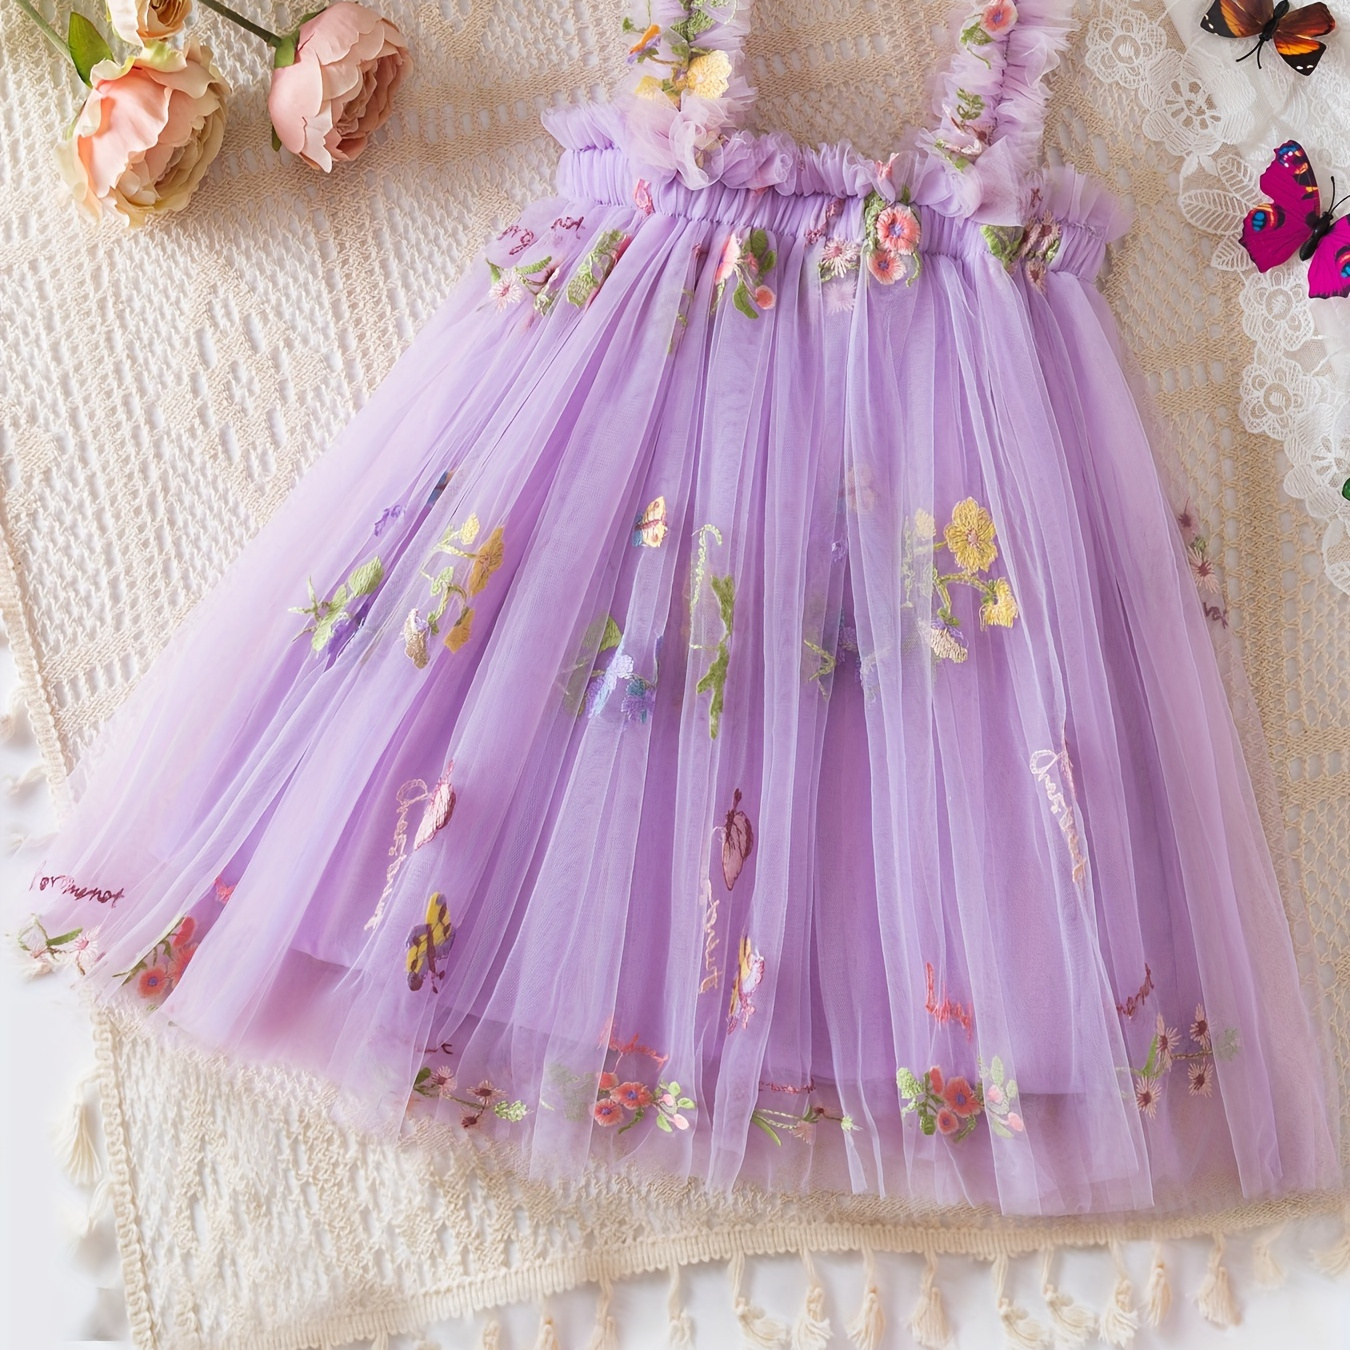 

Baby's Elegant Flower Embroidered Mesh Dress, Lovely Sleeveless Mesh Dress, Infant & Toddler Girl's Clothing For Summer Birthday Party, As Gift